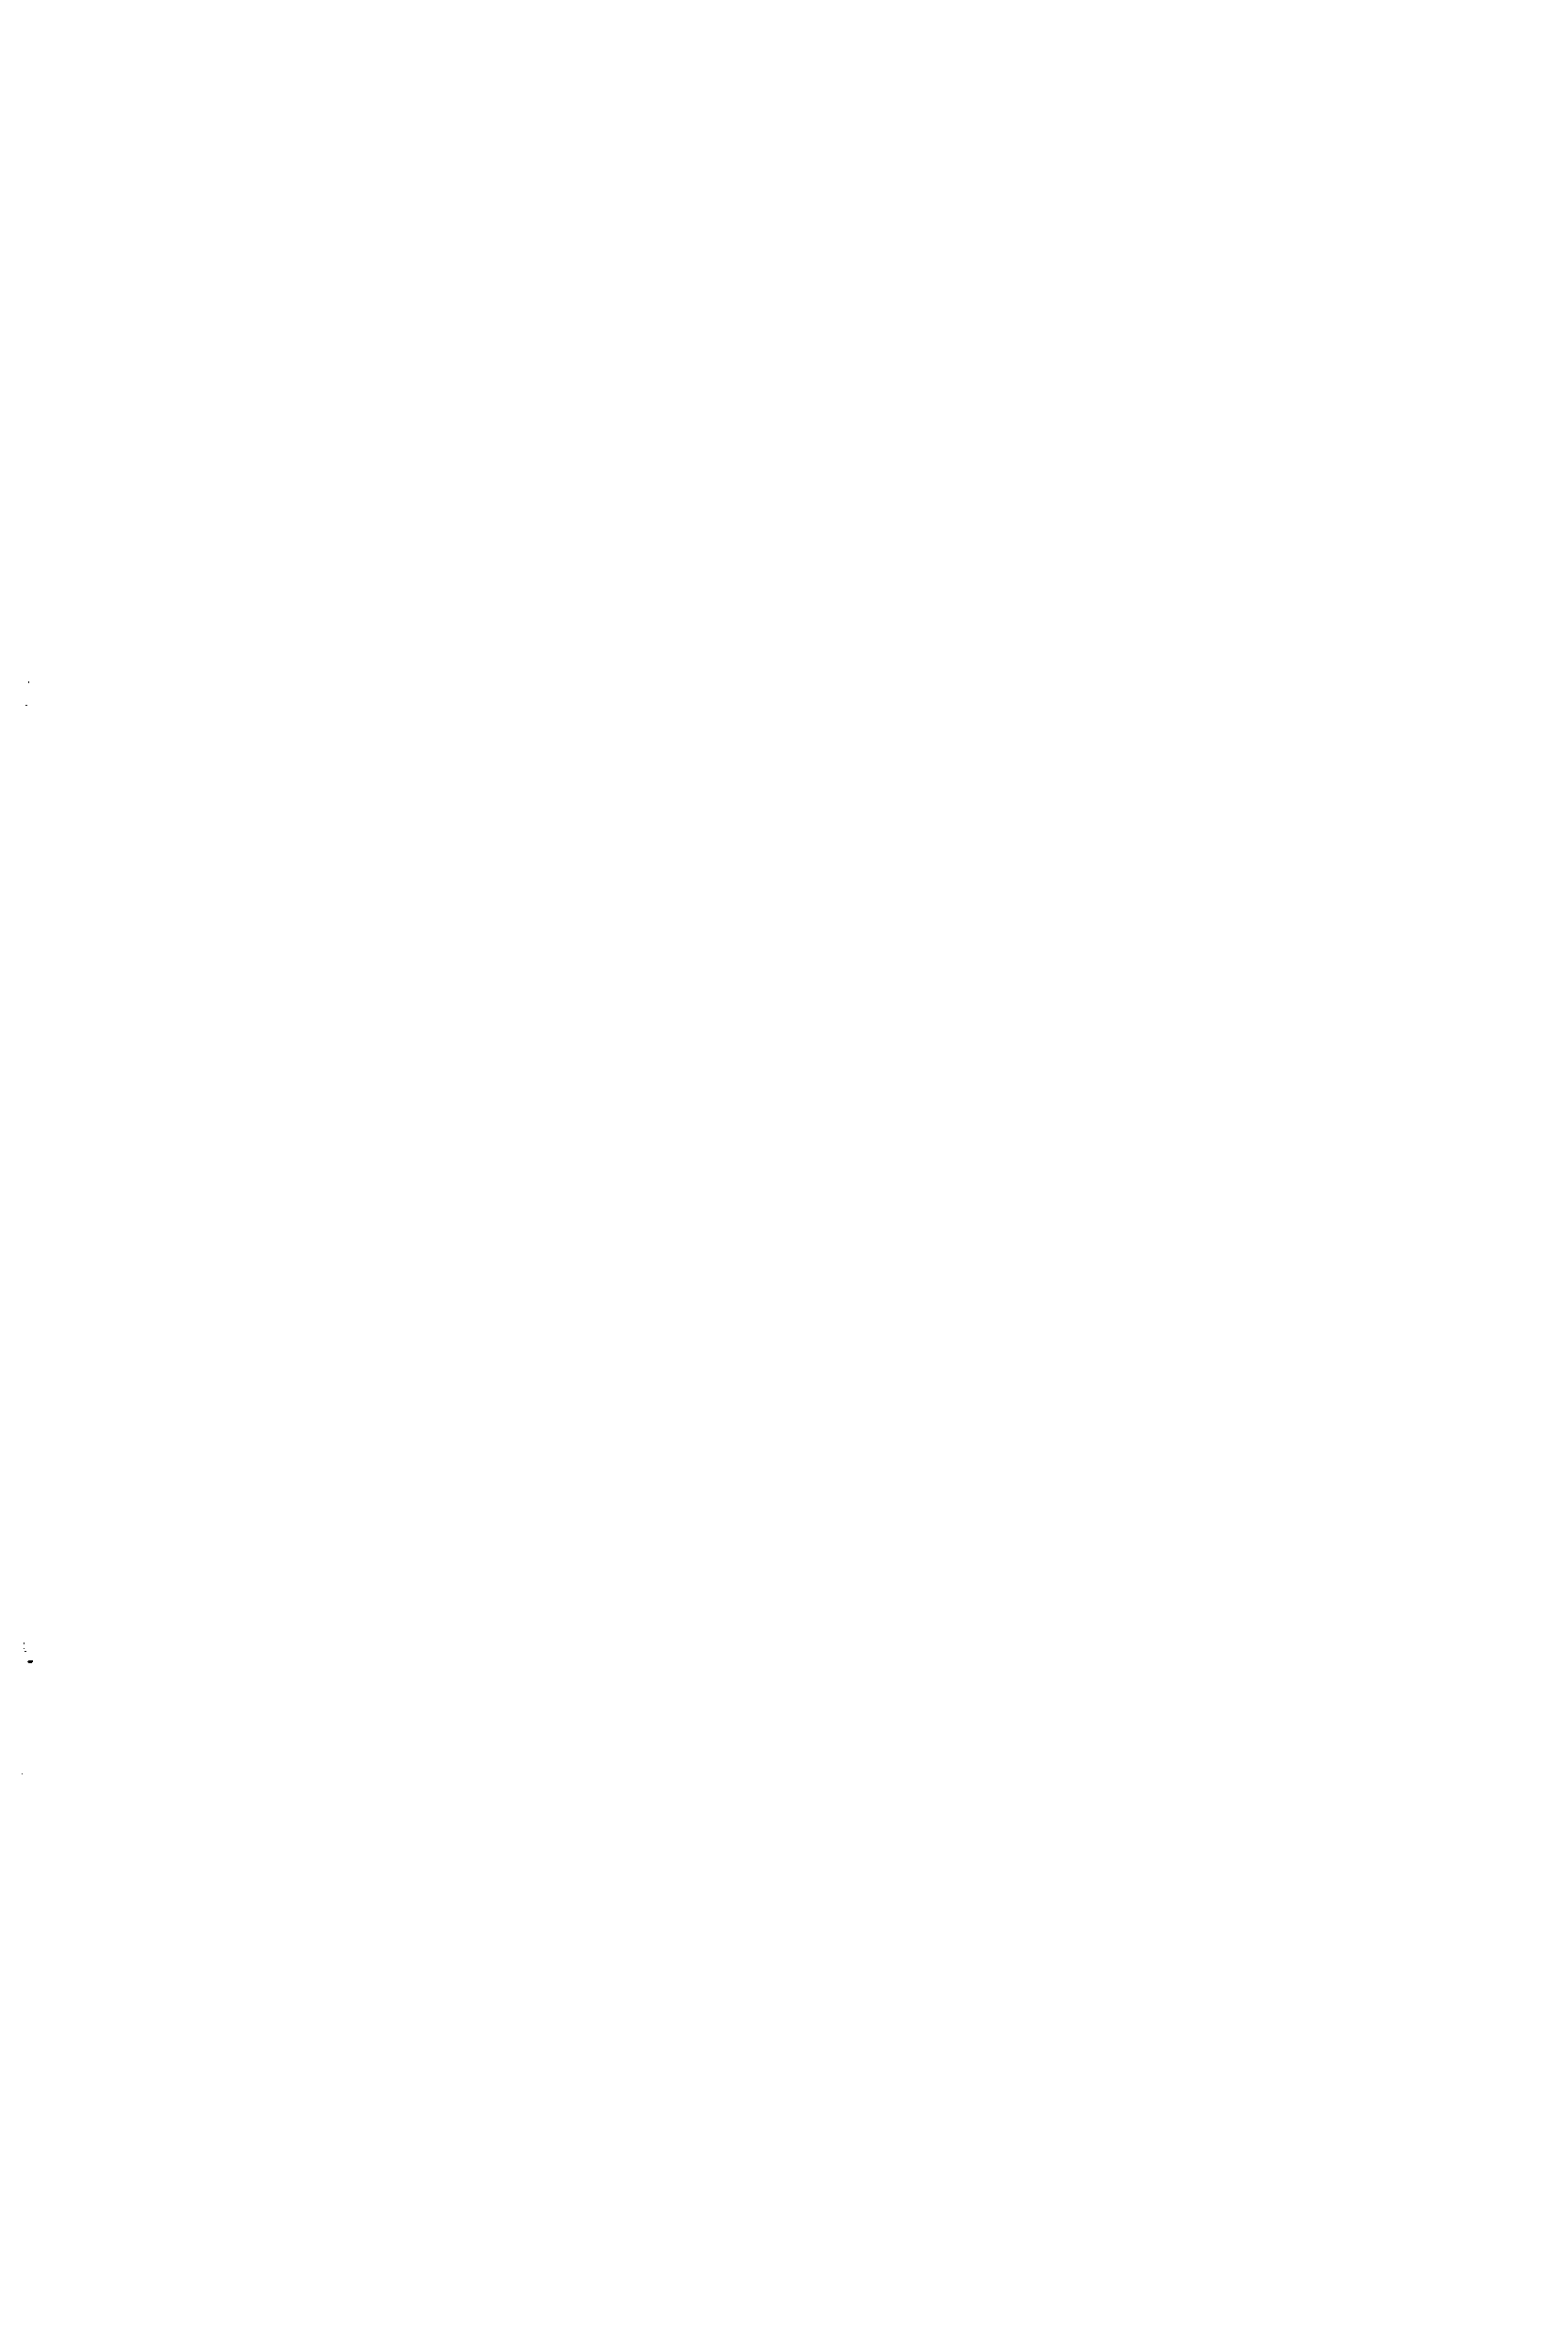 Рис. 15. Станок для химико-механического шлифования пластин <a href="/info/51120">твердого сплава</a> (конструкция одного из предприятий г. Воронежа).
